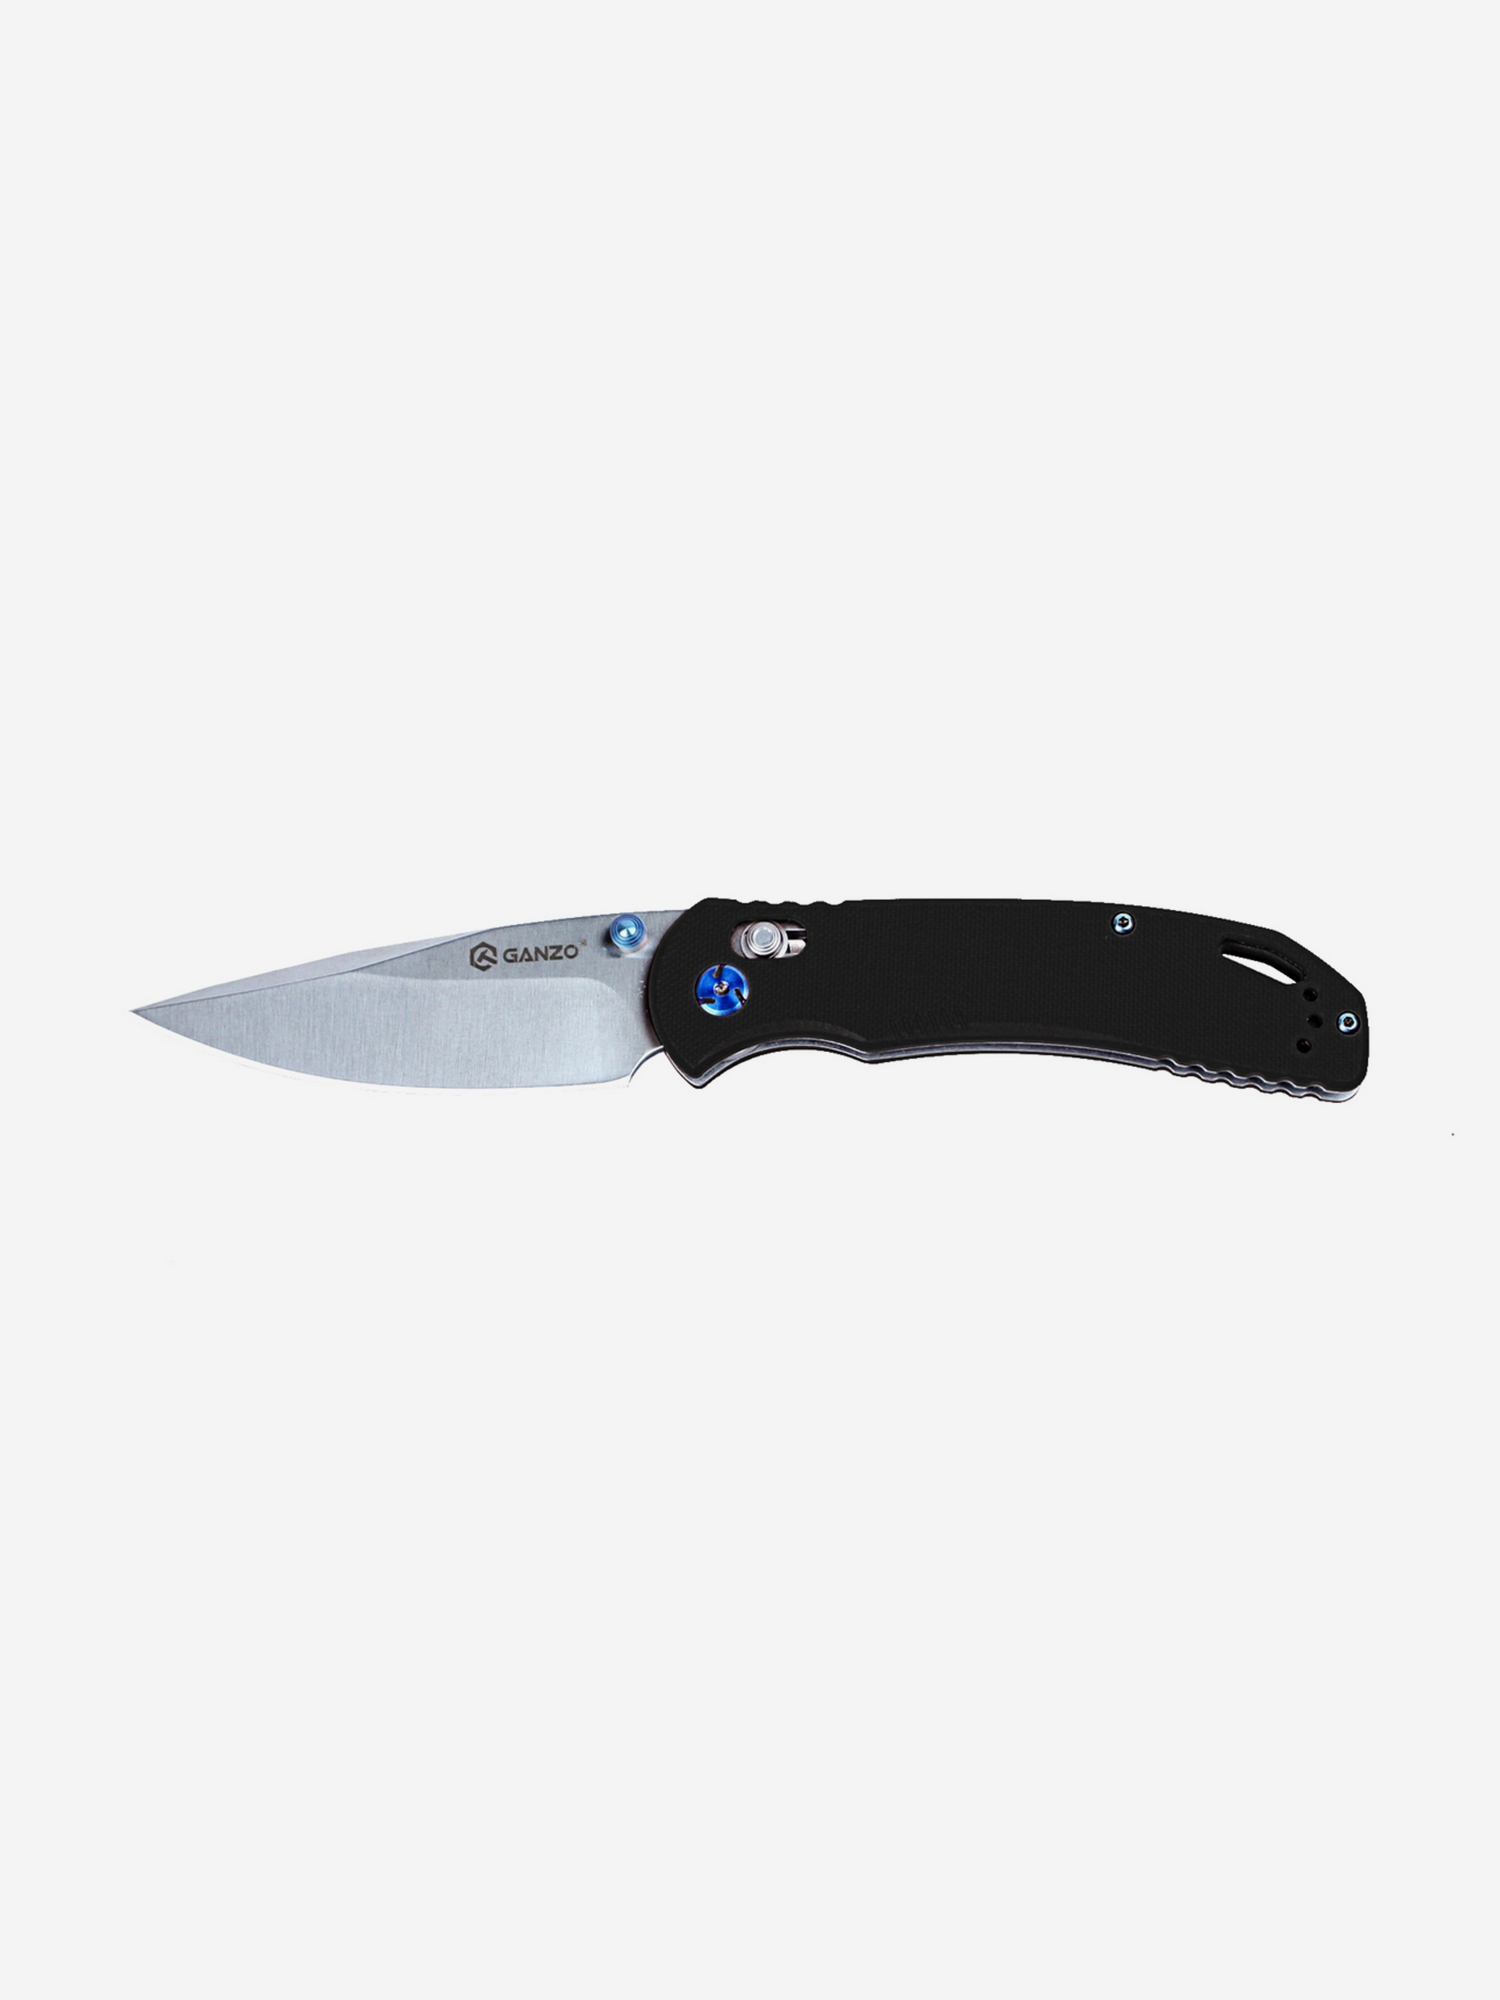 Нож складной туристический Ganzo G7531-BK, Черный